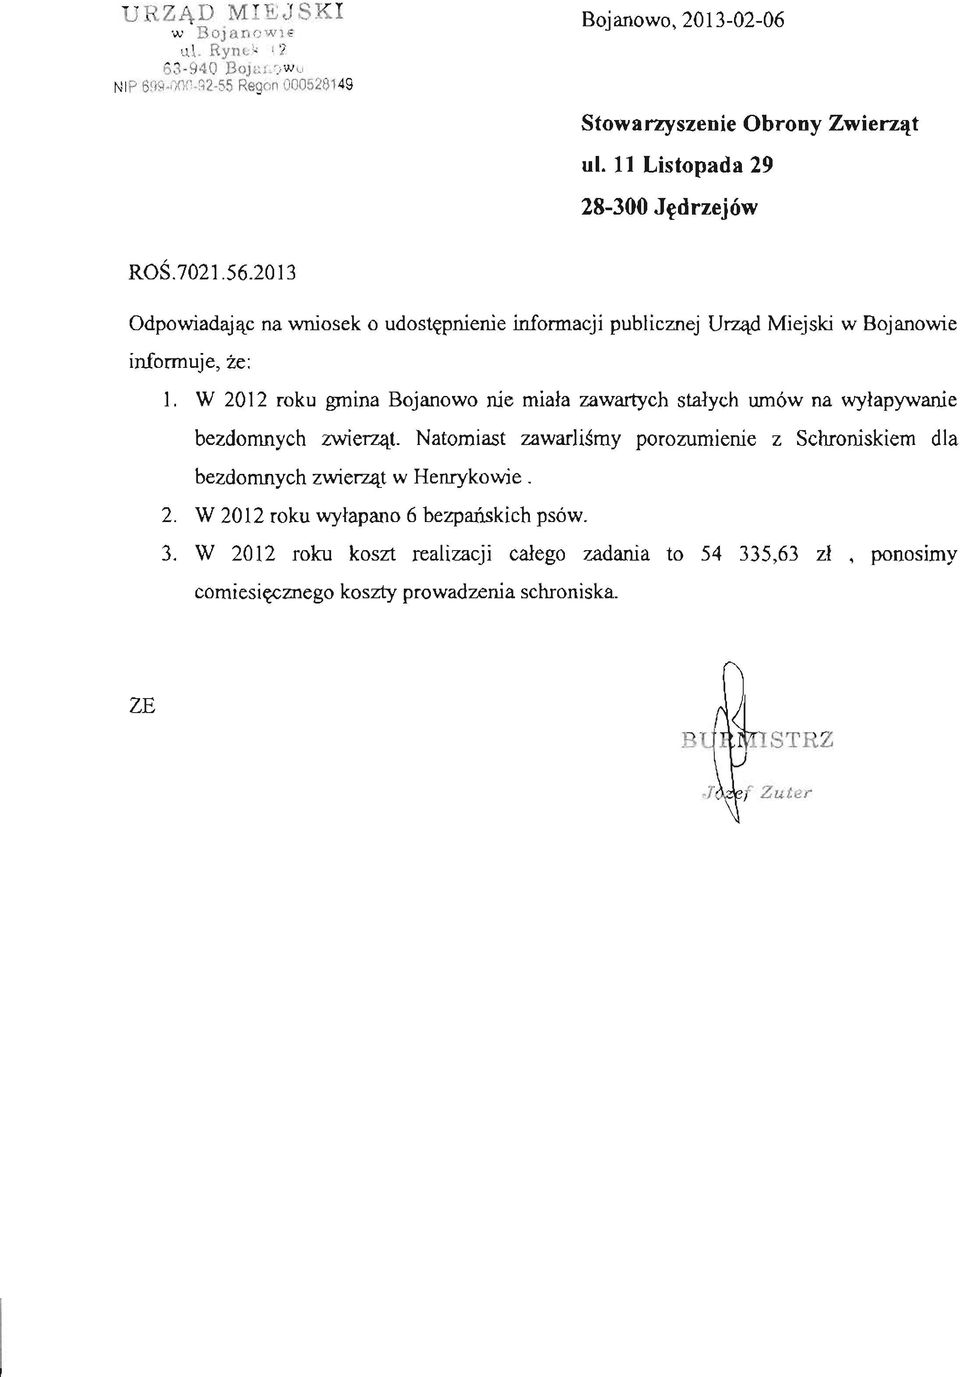 W 2012 roku gmina Bojanowo nie miała zawartych stałych umów na wyłapywanie bezdomnych zwierząt.